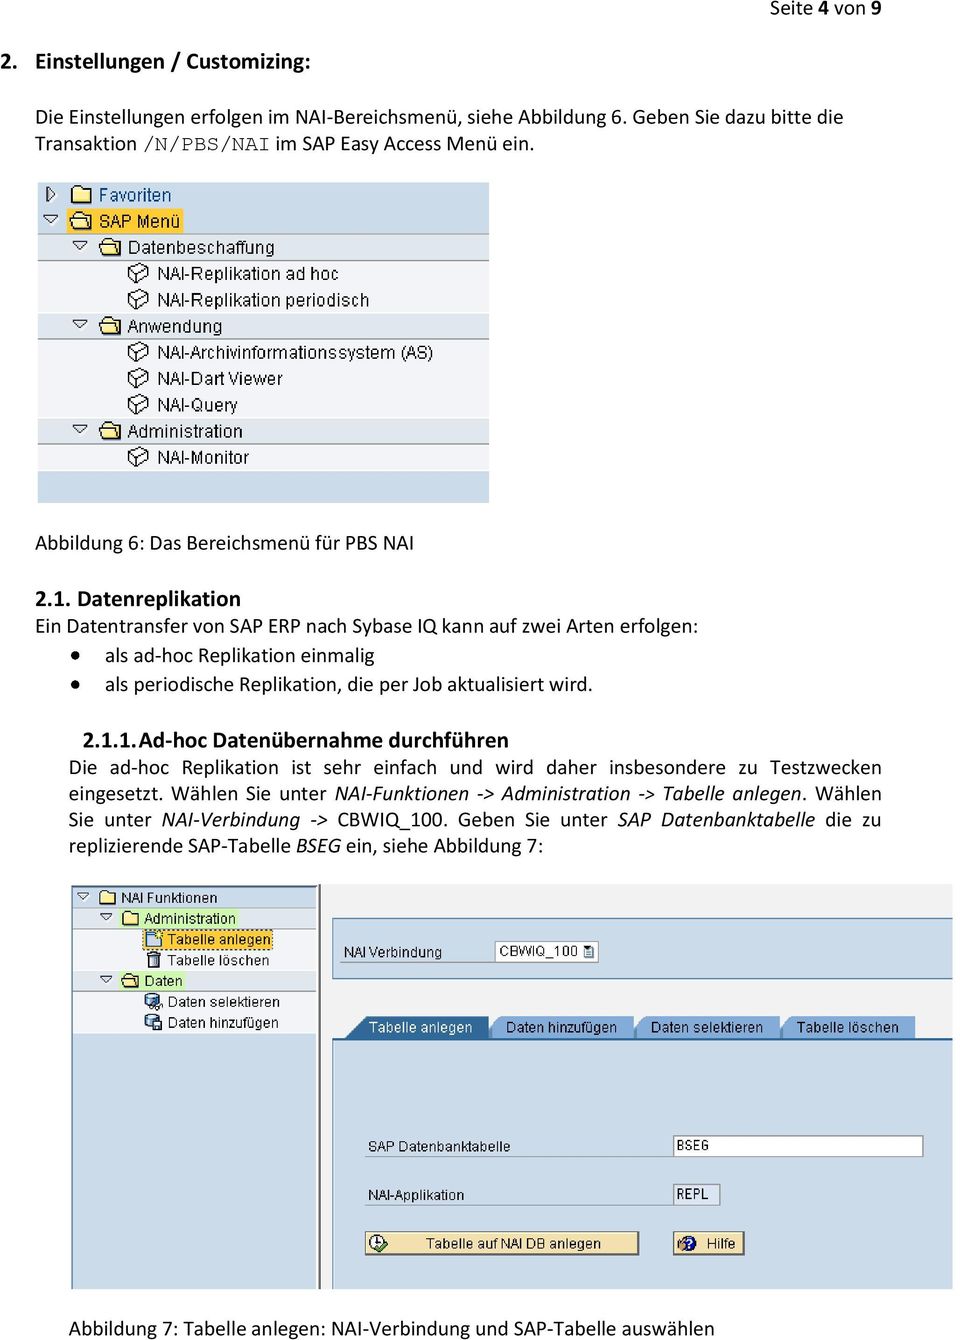 Datenreplikation Ein Datentransfer von SAP ERP nach Sybase IQ kann auf zwei Arten erfolgen: als ad-hoc Replikation einmalig als periodische Replikation, die per Job aktualisiert wird. 2.1.